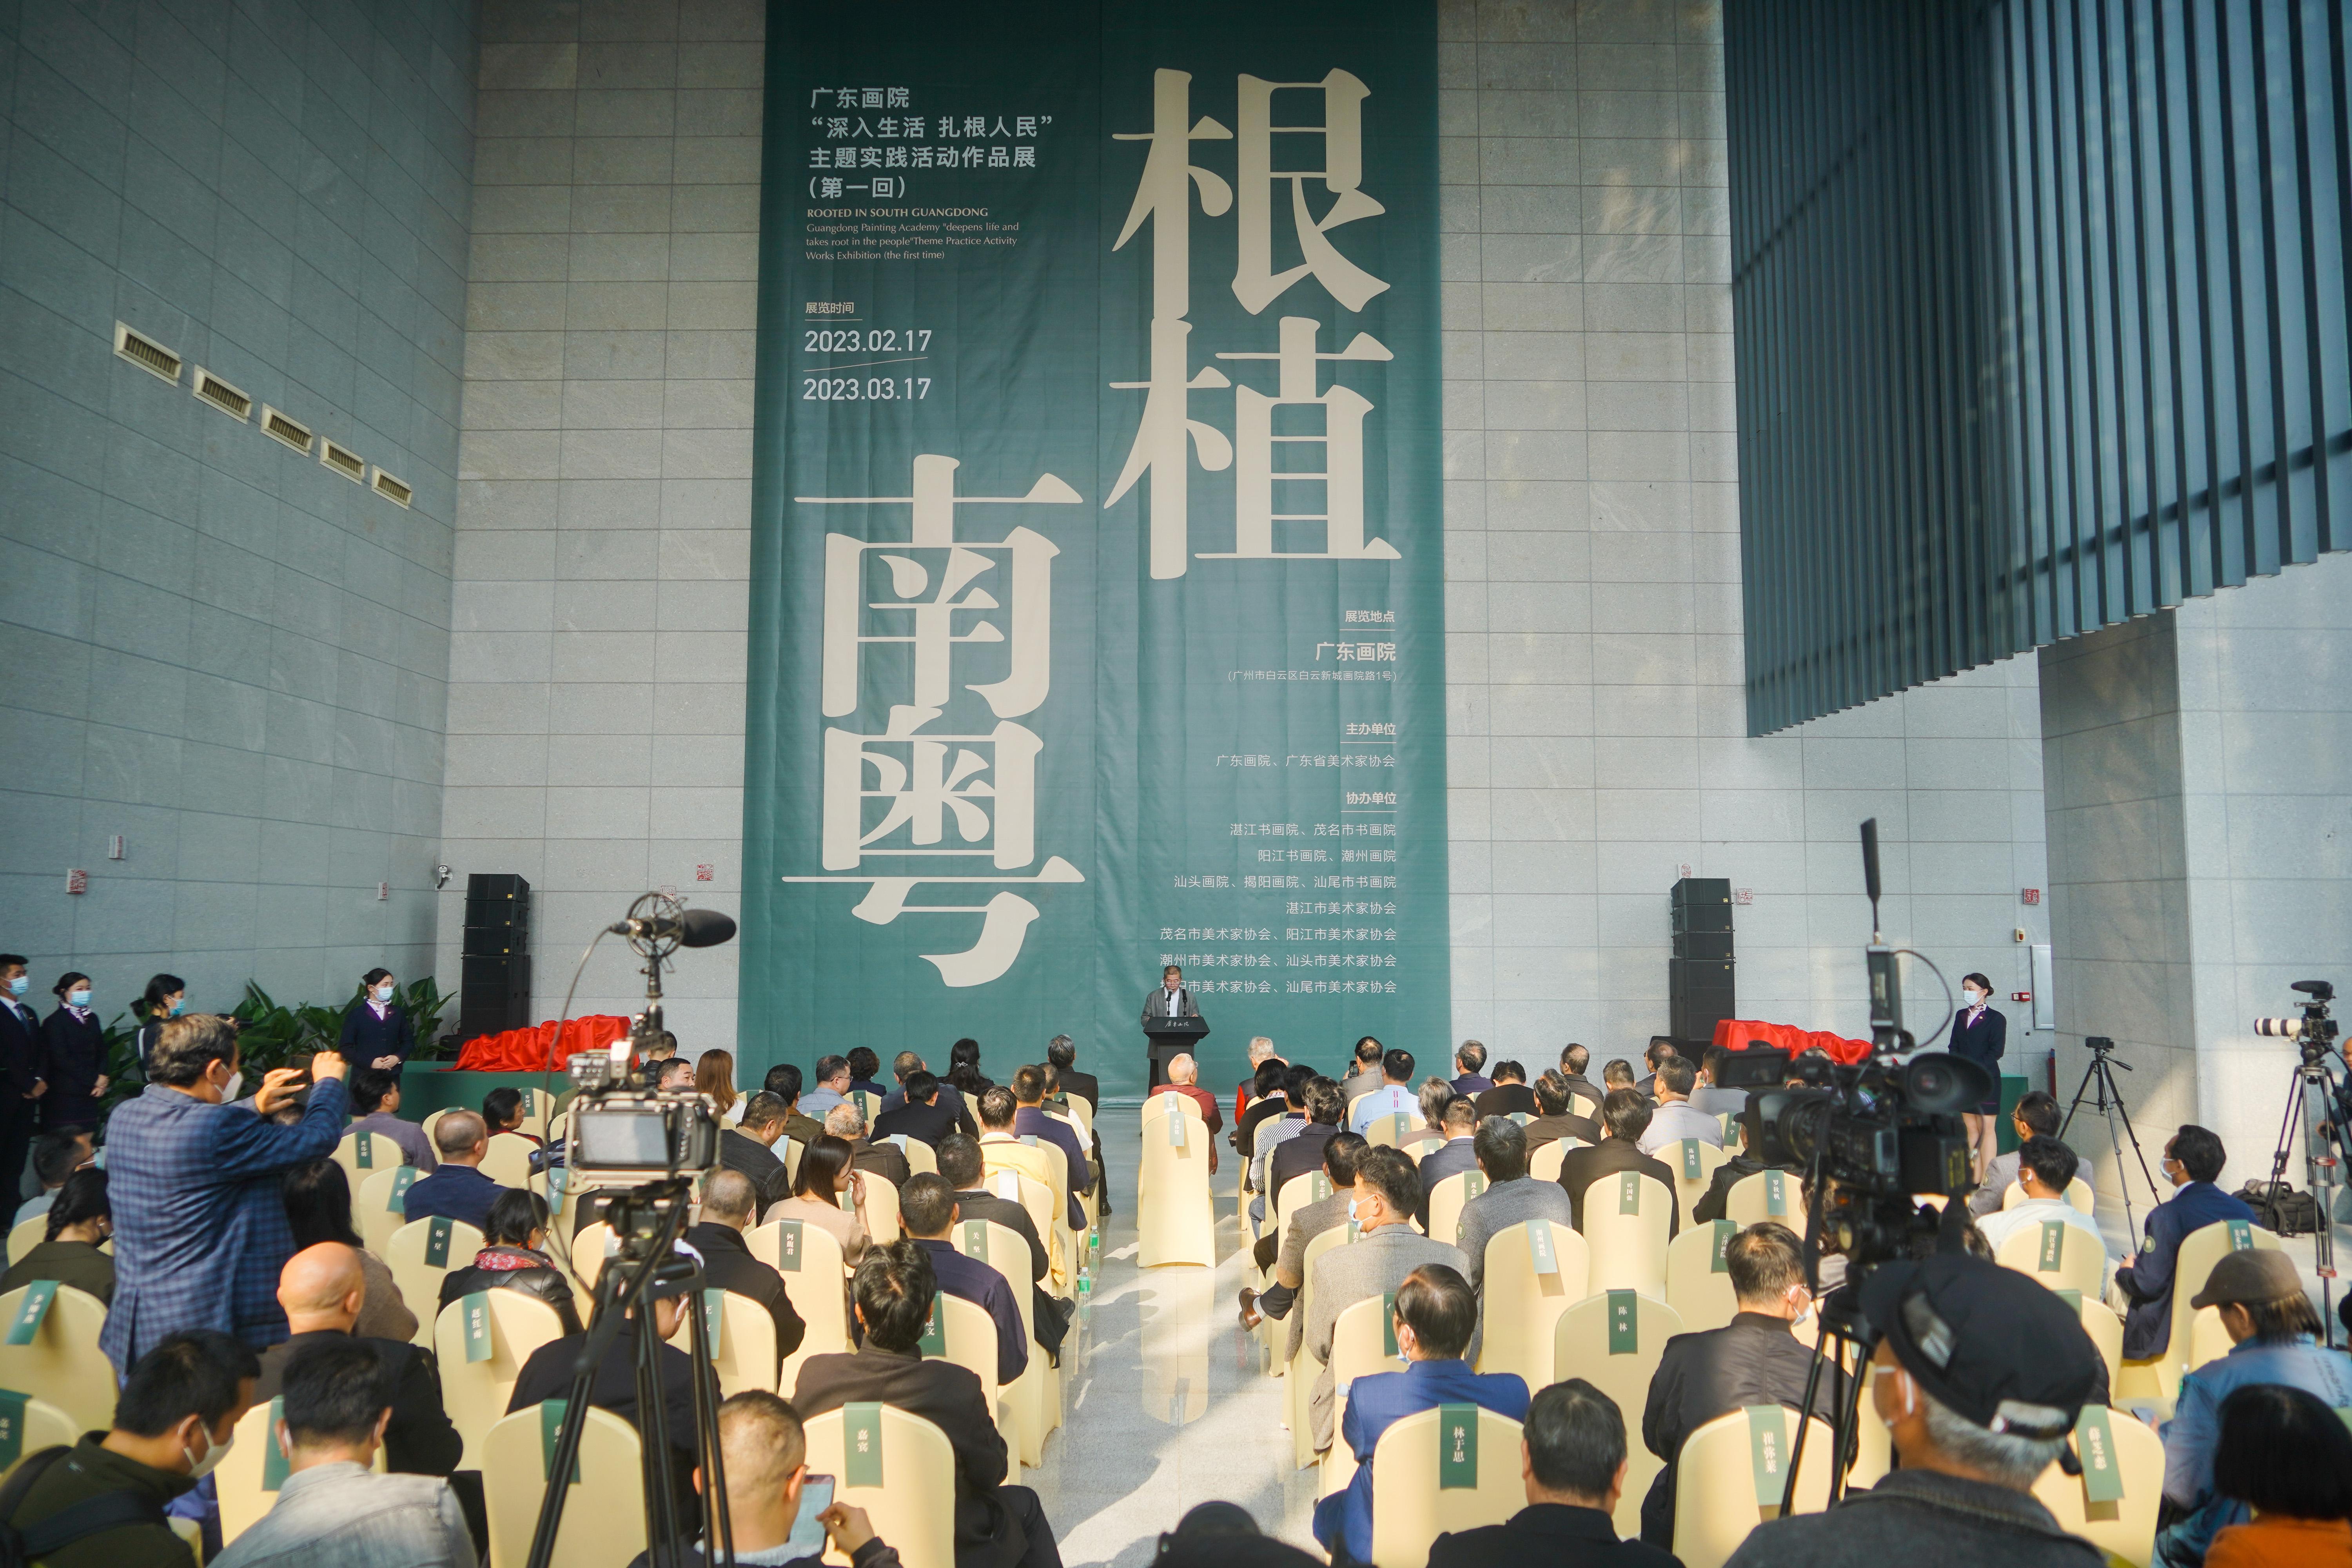 【雲上嶺南】The Rooted in Guangdong, Immersed in Life exhibition opened at the Guangdong Art Institute  